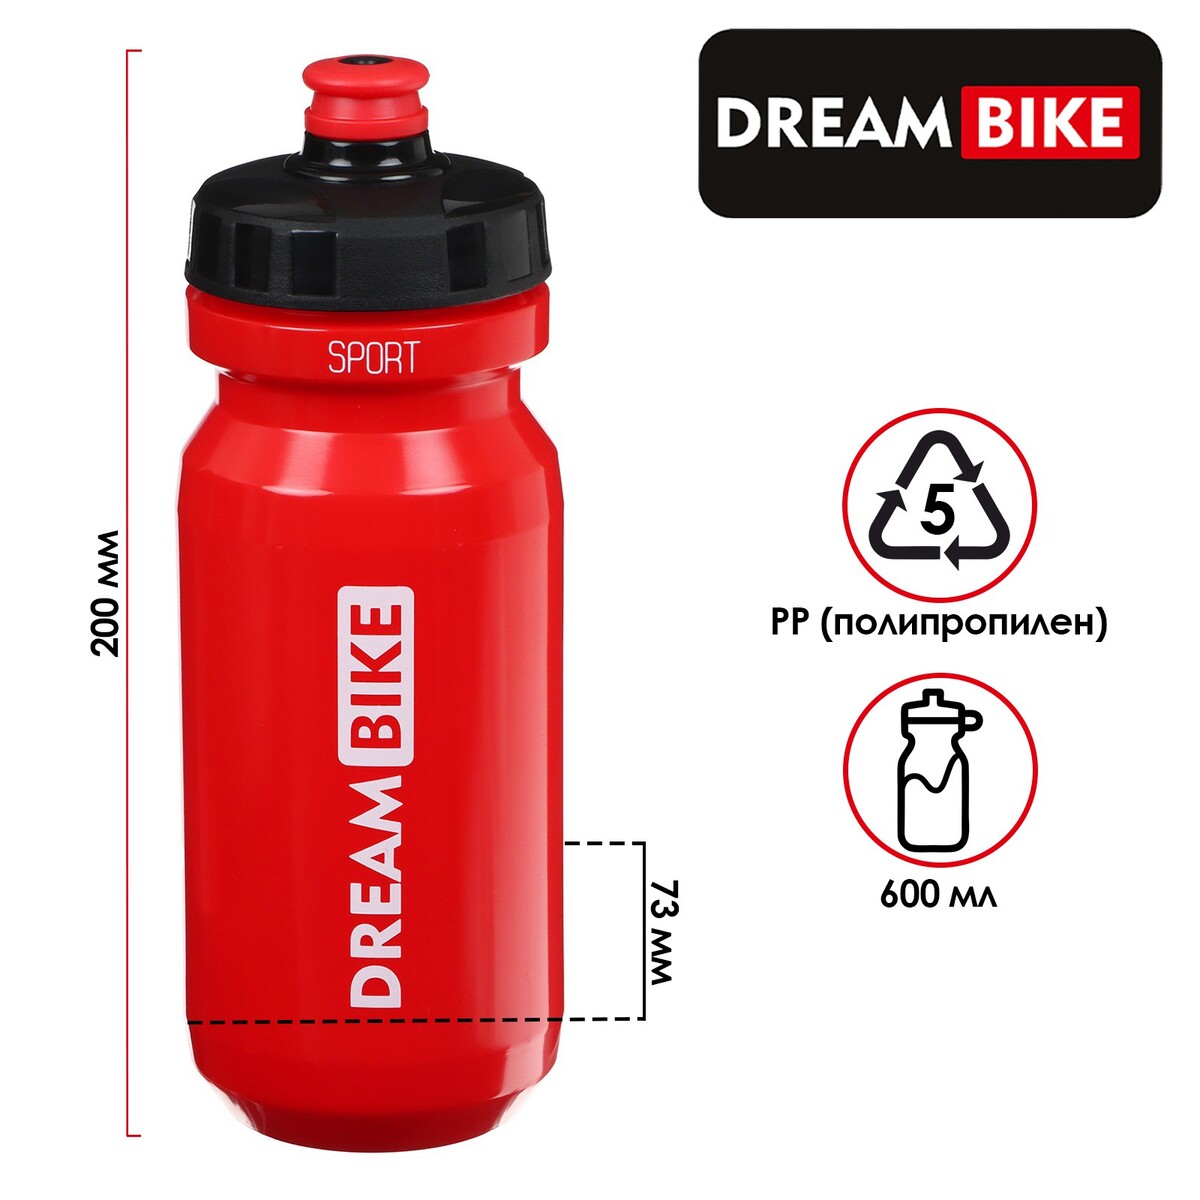 Велофляга dream bike 600 мл, цвет красный, Dream Bike